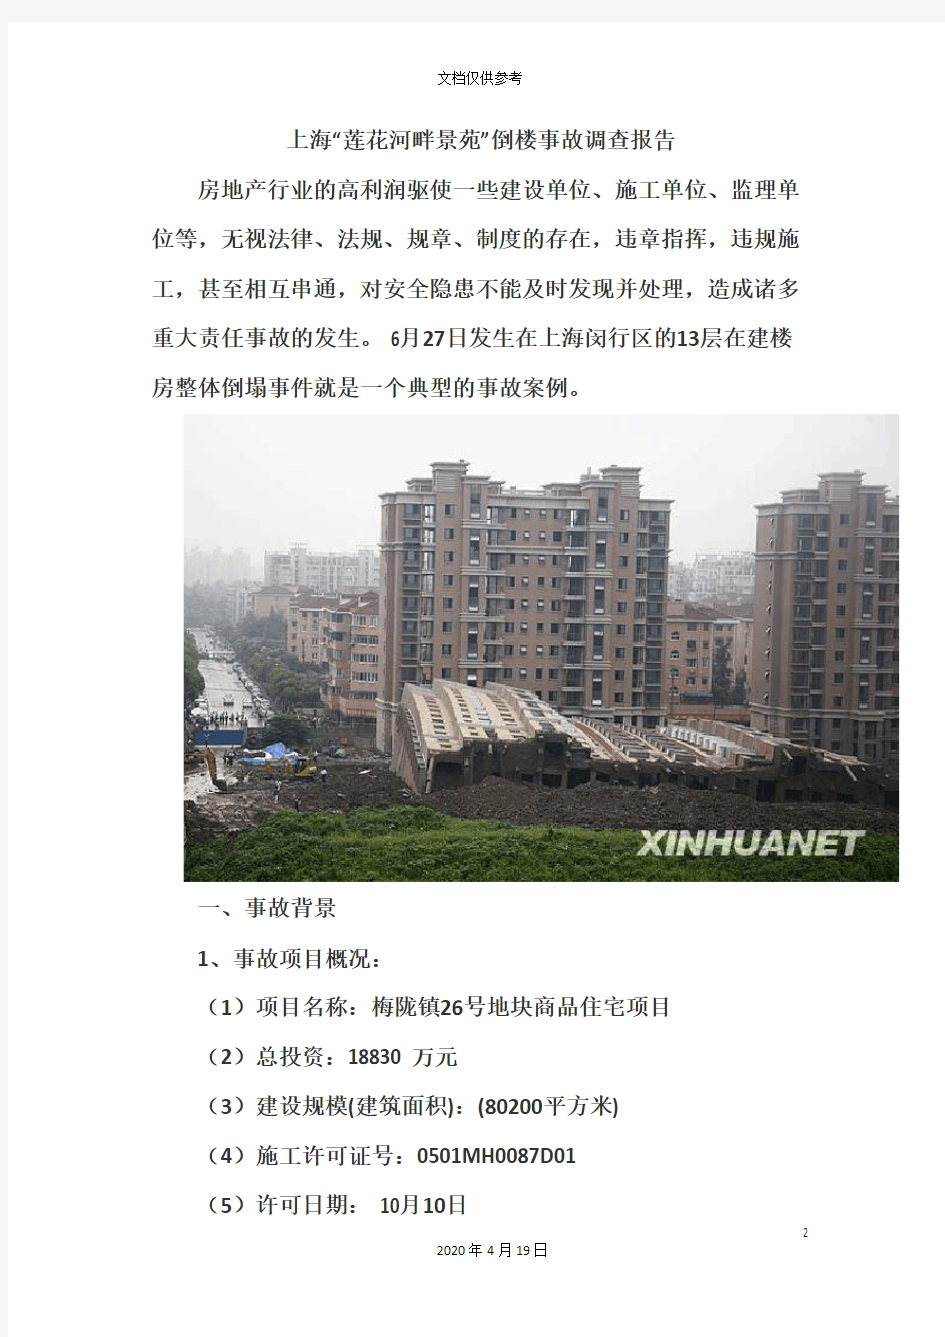 上海莲花河畔楼倒安全事故调查报告